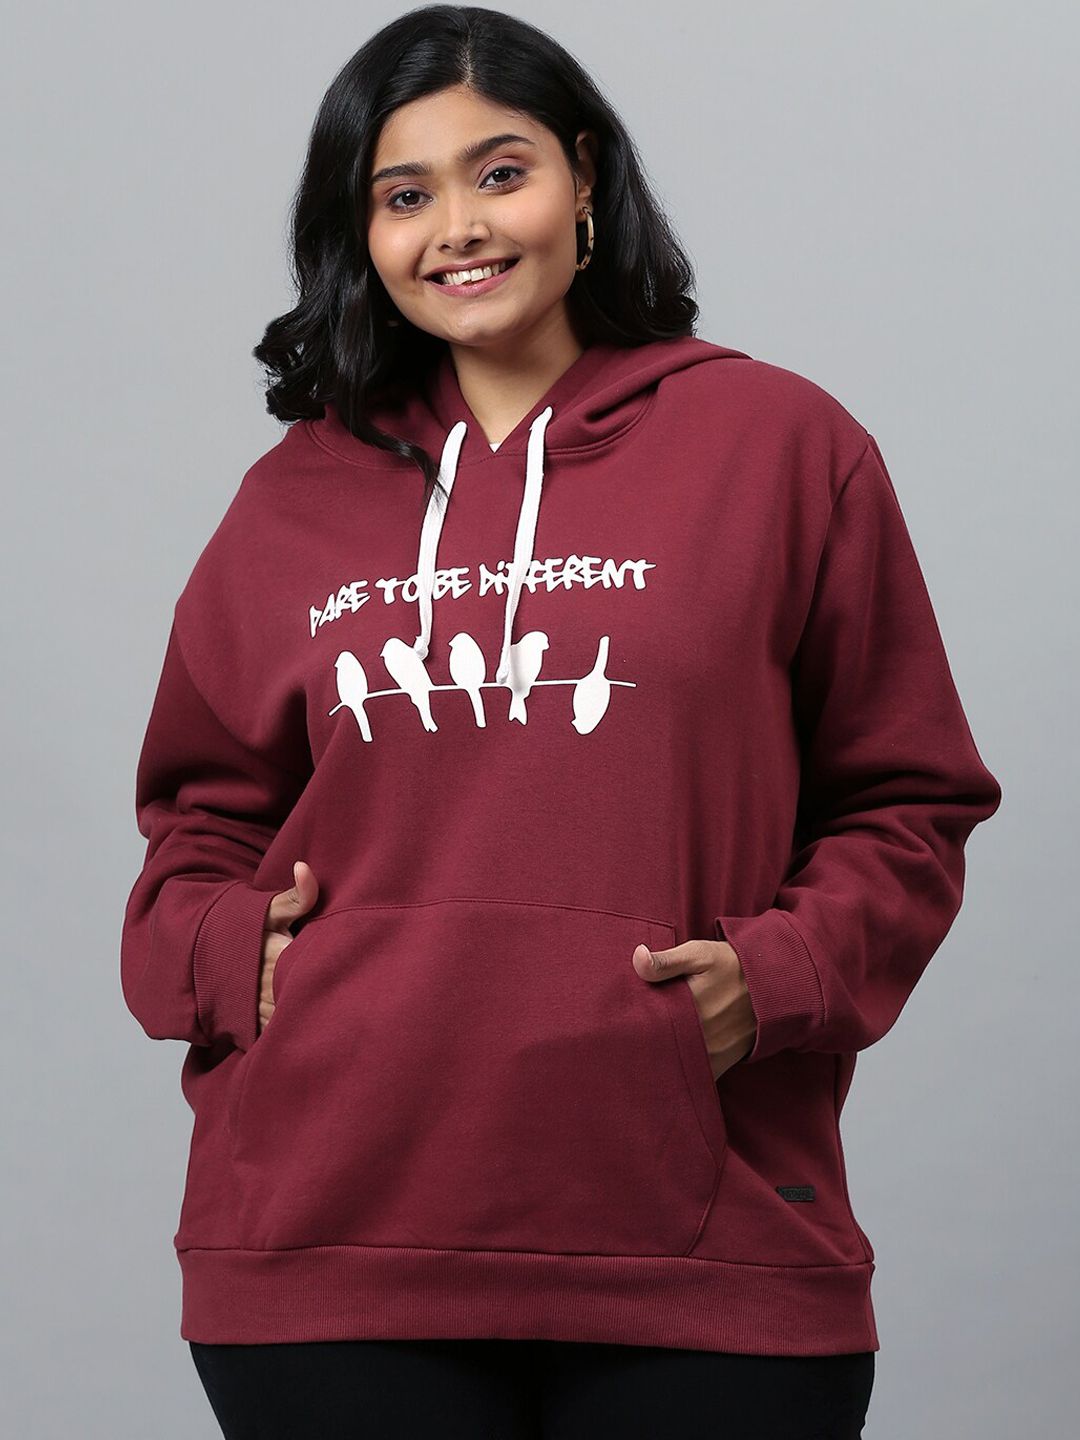 Instafab Plus Women Maroon Printed Hooded Sweatshirt Price in India